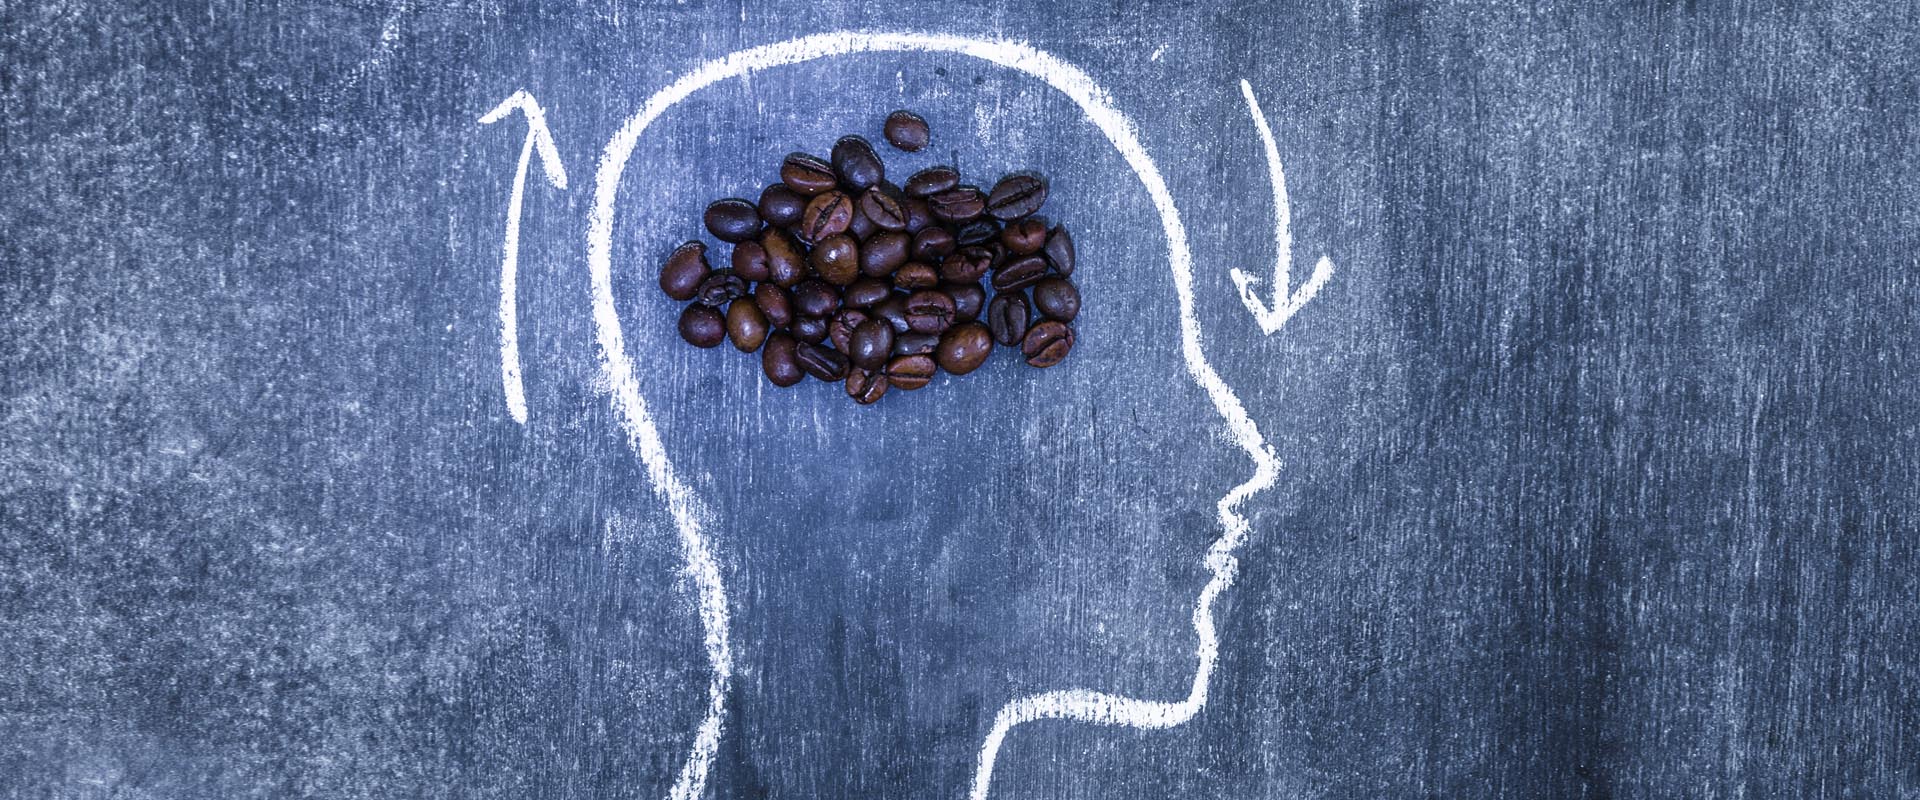 El café puede ayudarle a mejorar la memoria